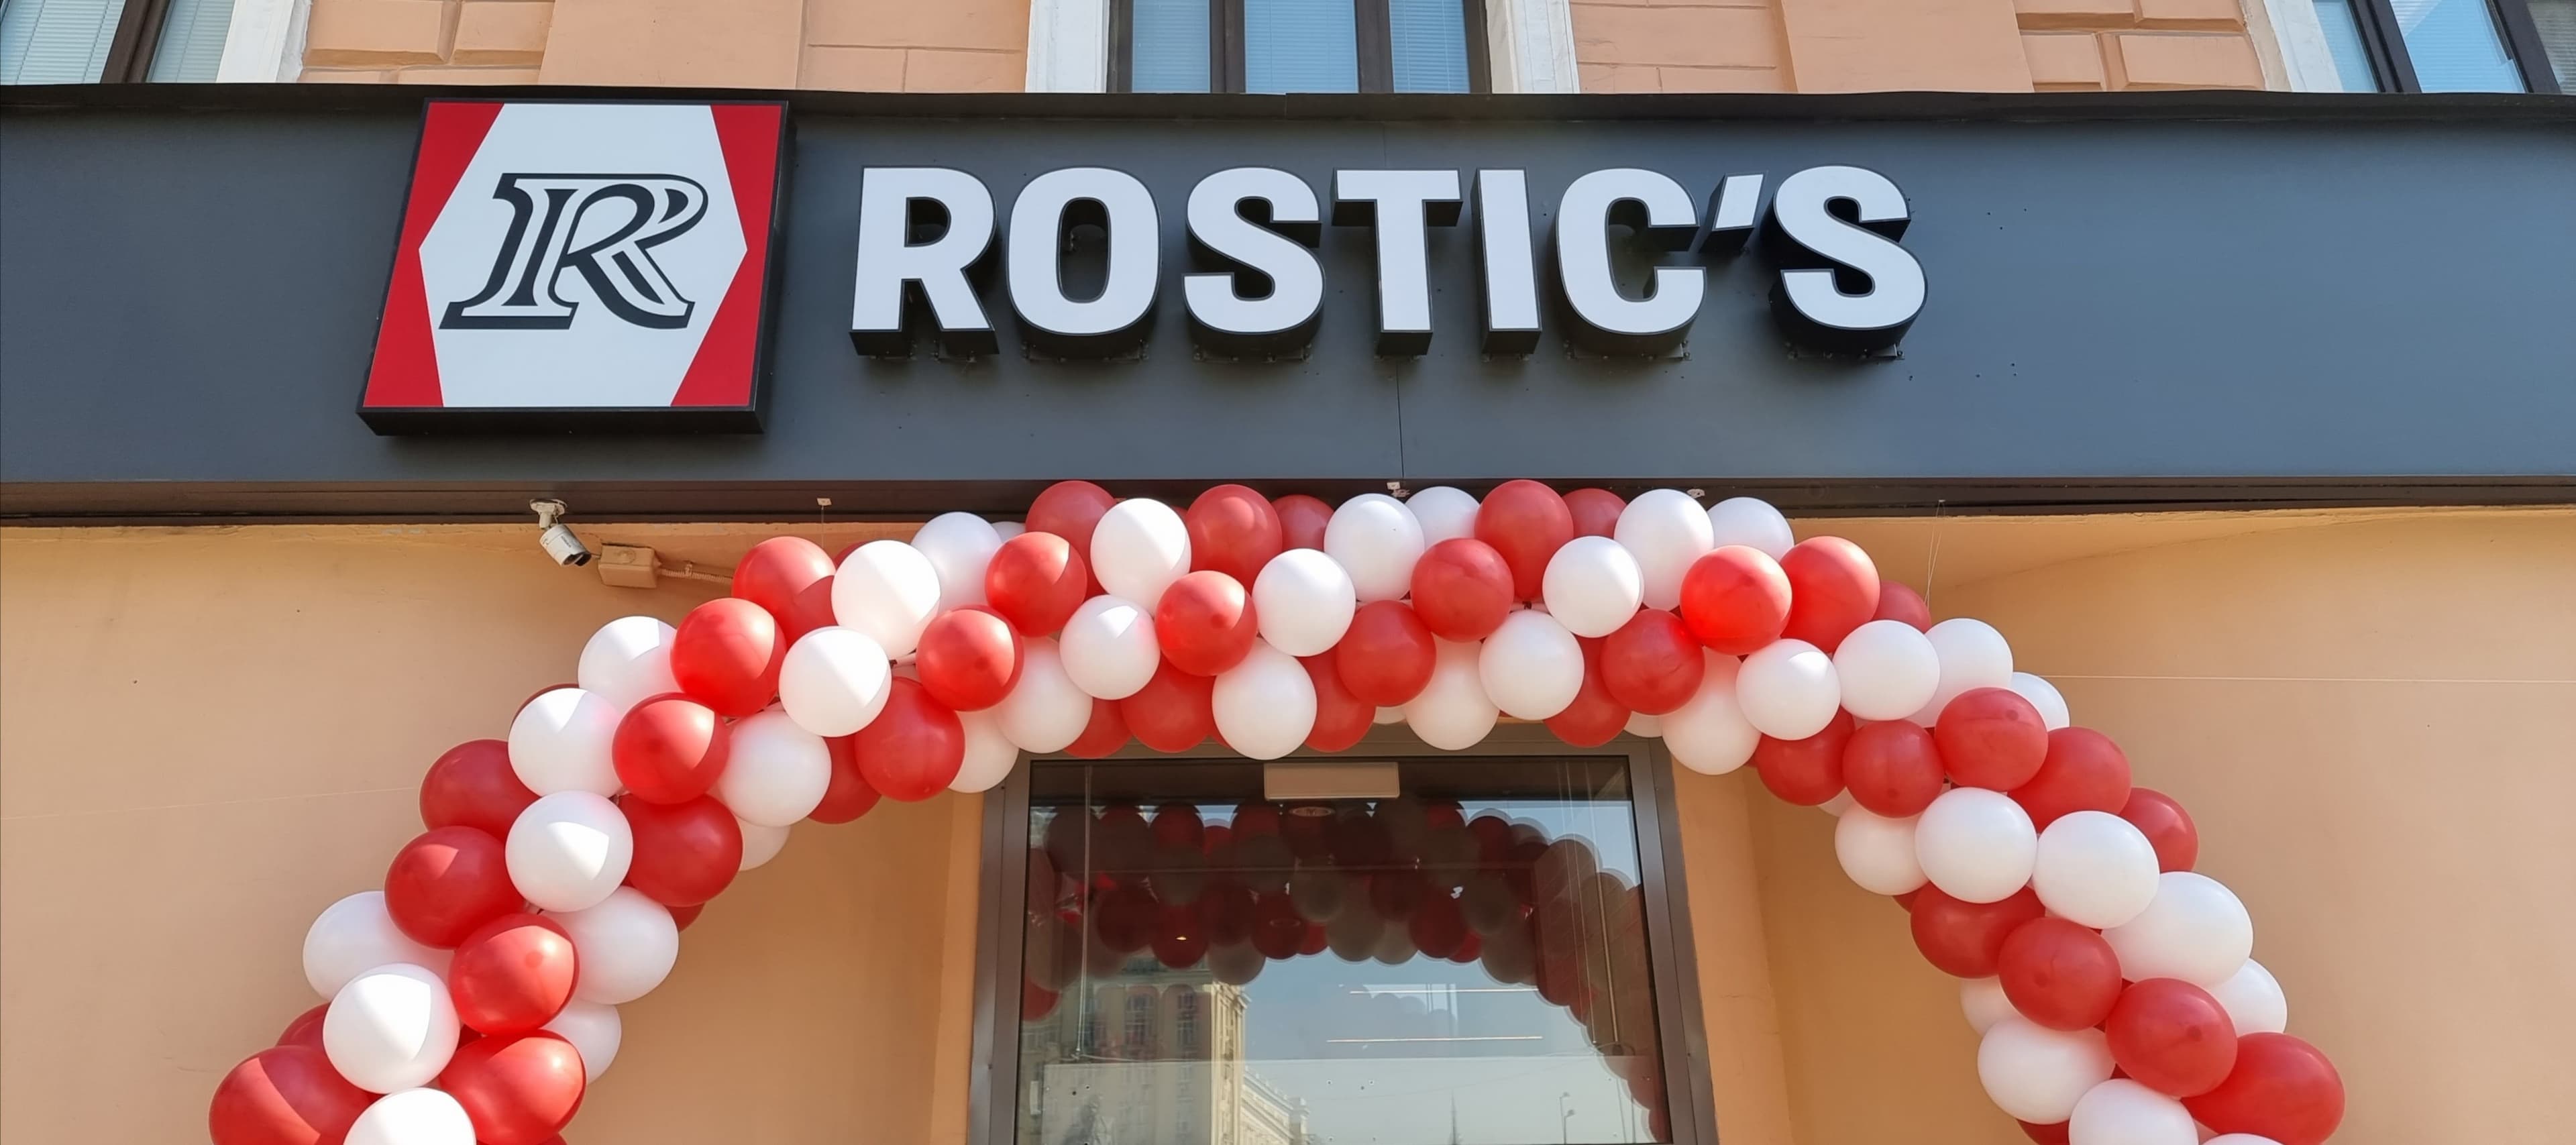 Фото новости: "Часть заведений KFC отказалась от переименования в Rostic’s"